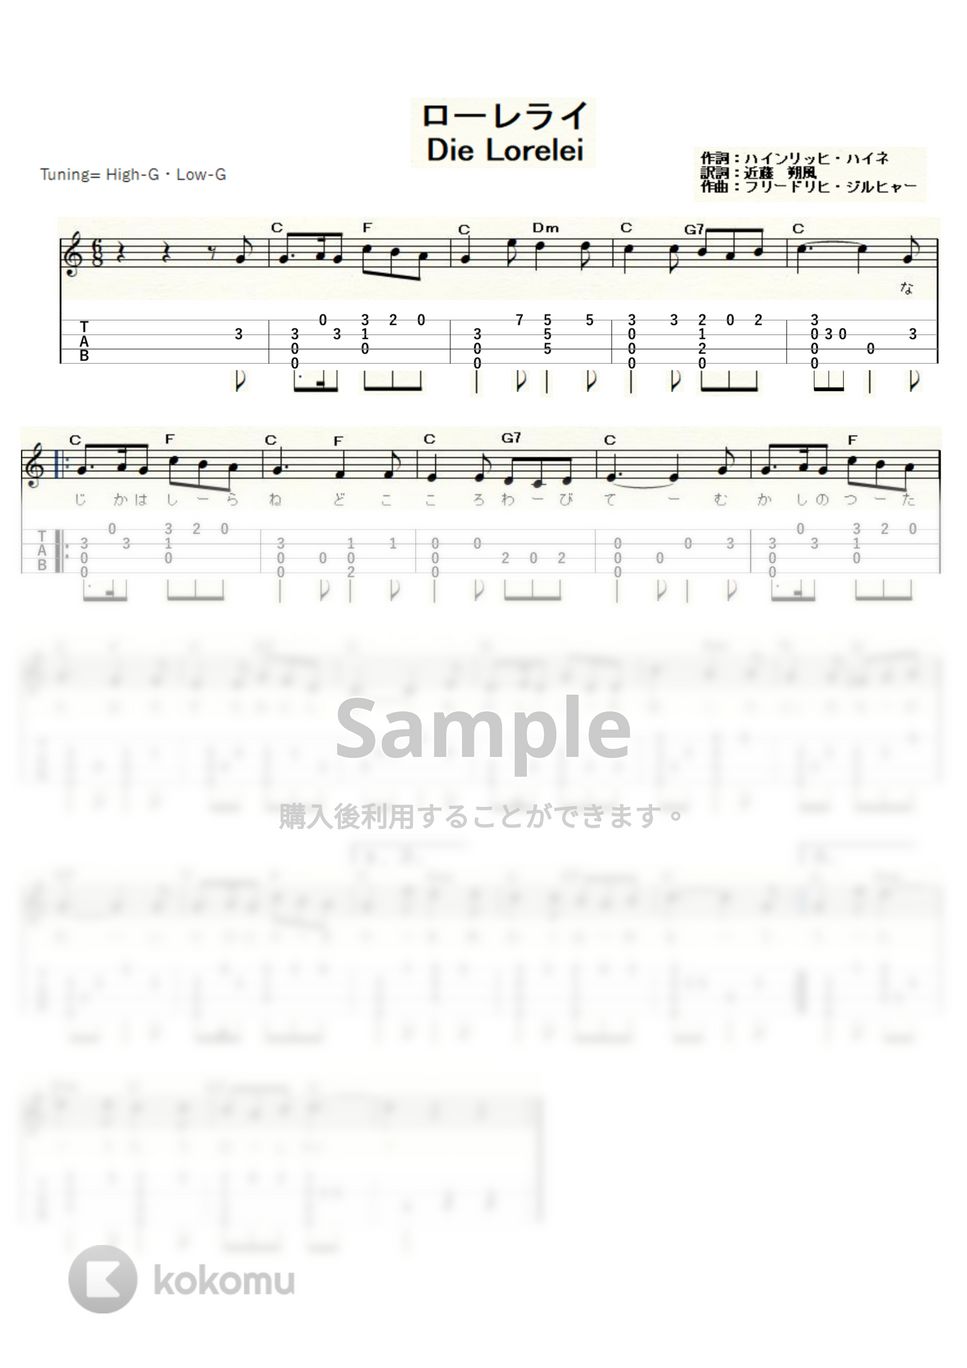 ローレライ (ｳｸﾚﾚｿﾛ / High-G・Low-G / 初級～中級) by ukulelepapa